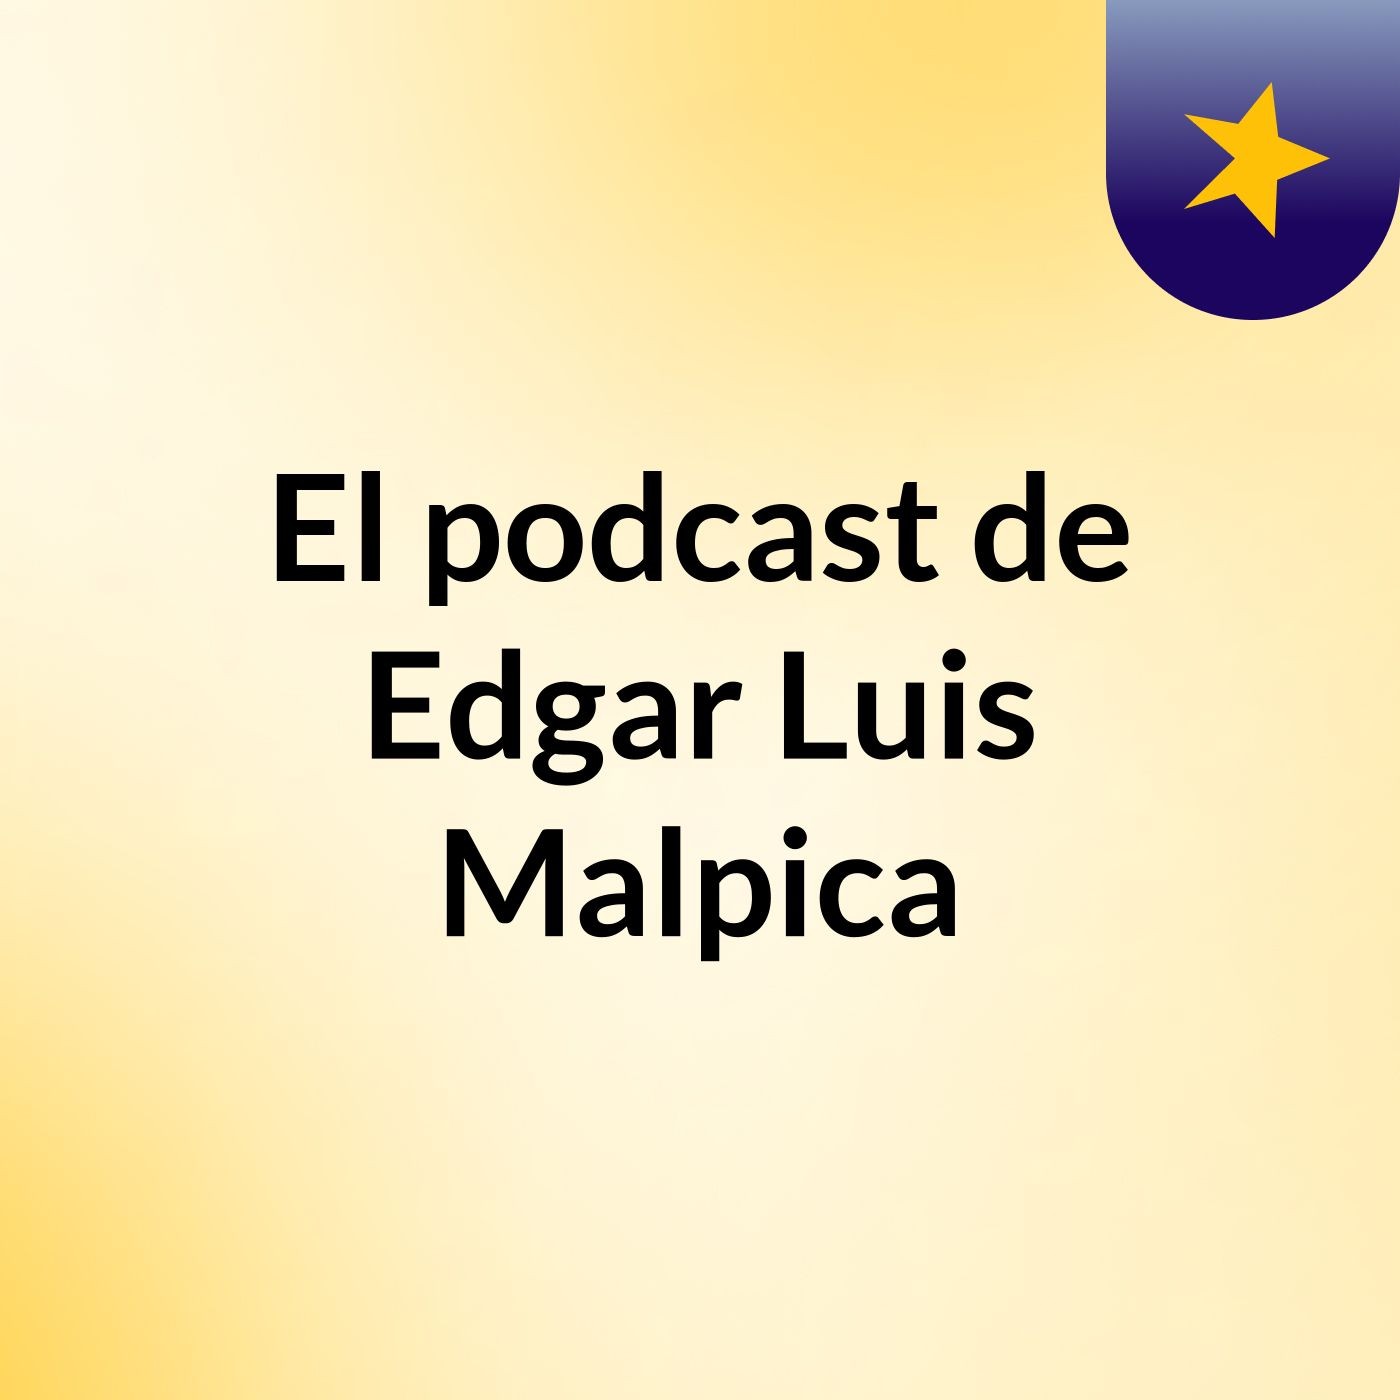 SPEECH Episodio 2 - El podcast de Edgar Luis Malpica